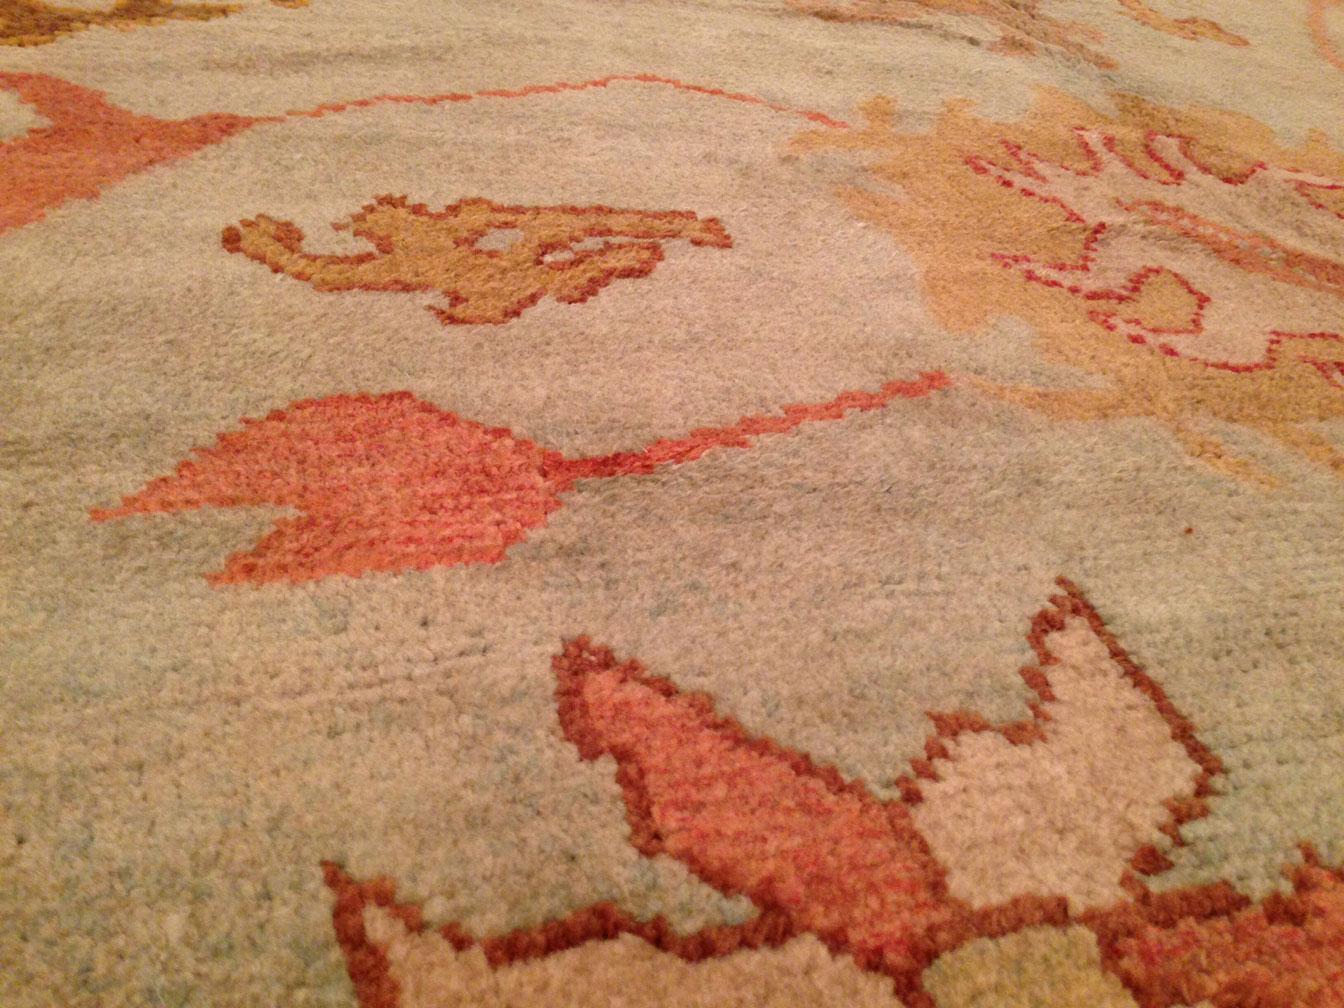 Antique oushak Carpet - # 8767